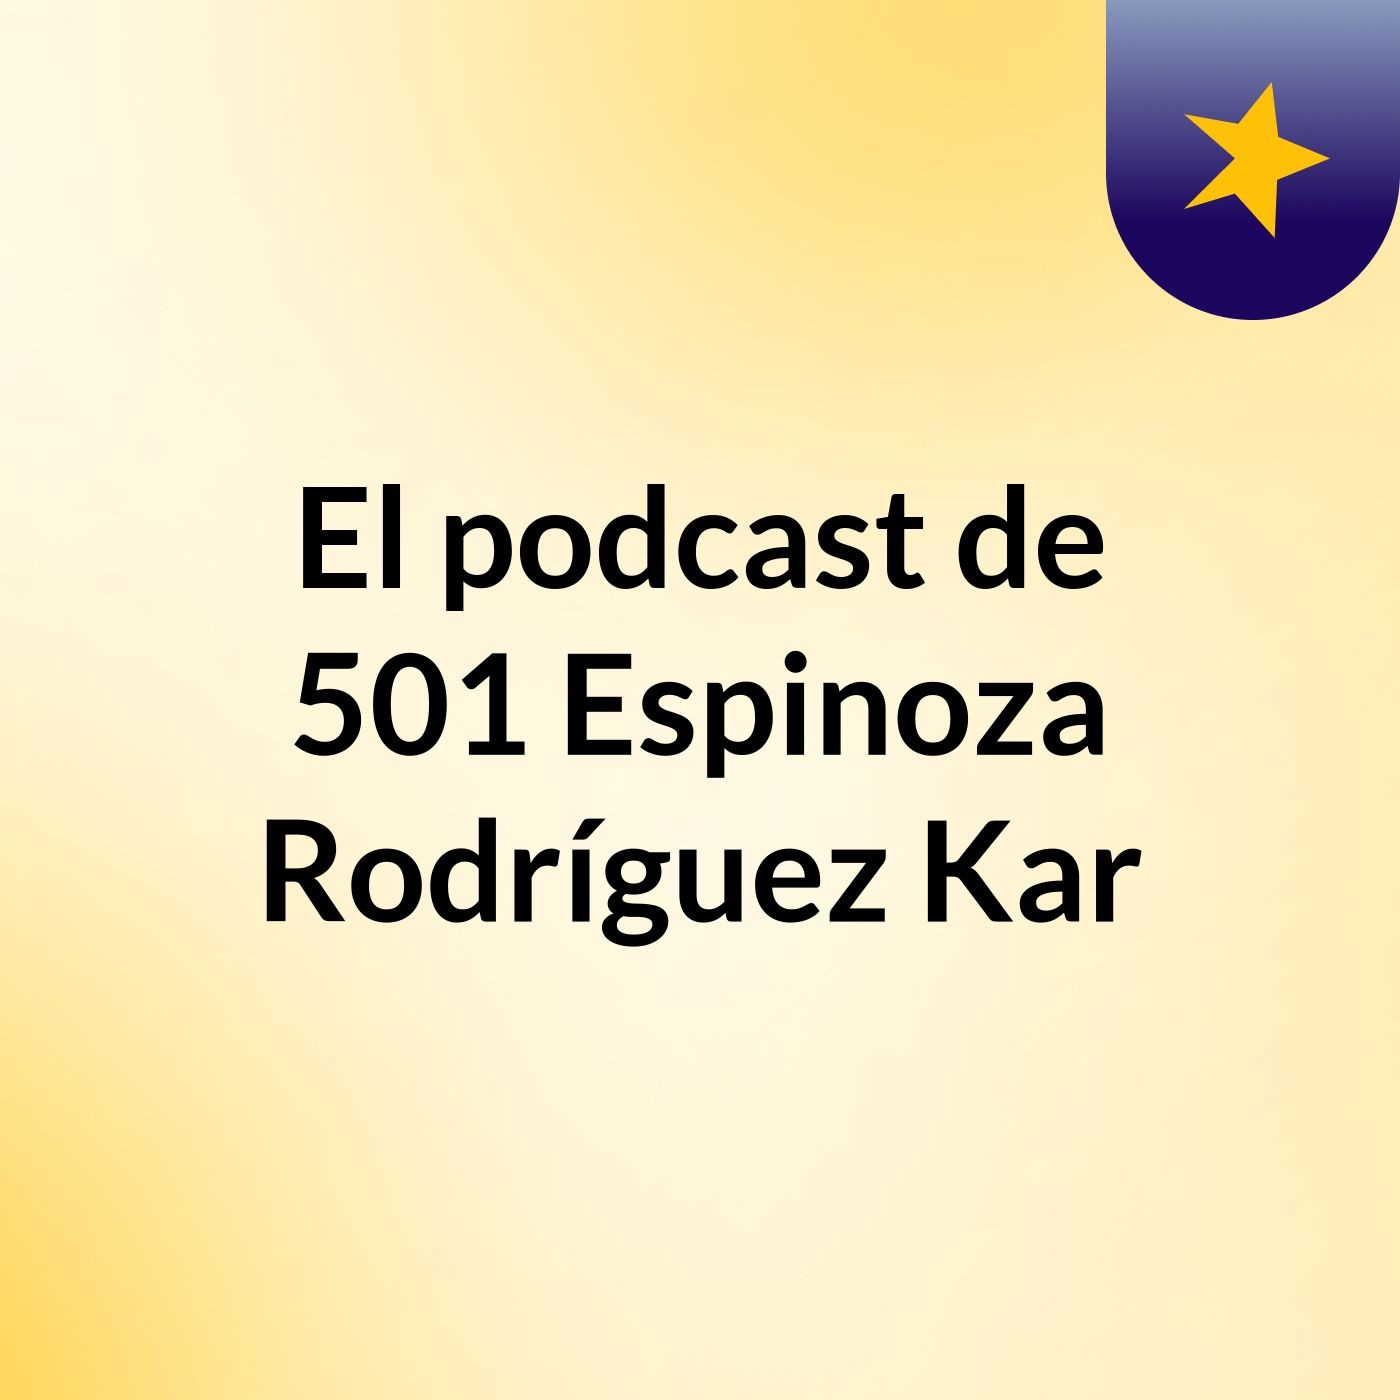 El podcast de 501 Espinoza Rodríguez Kar